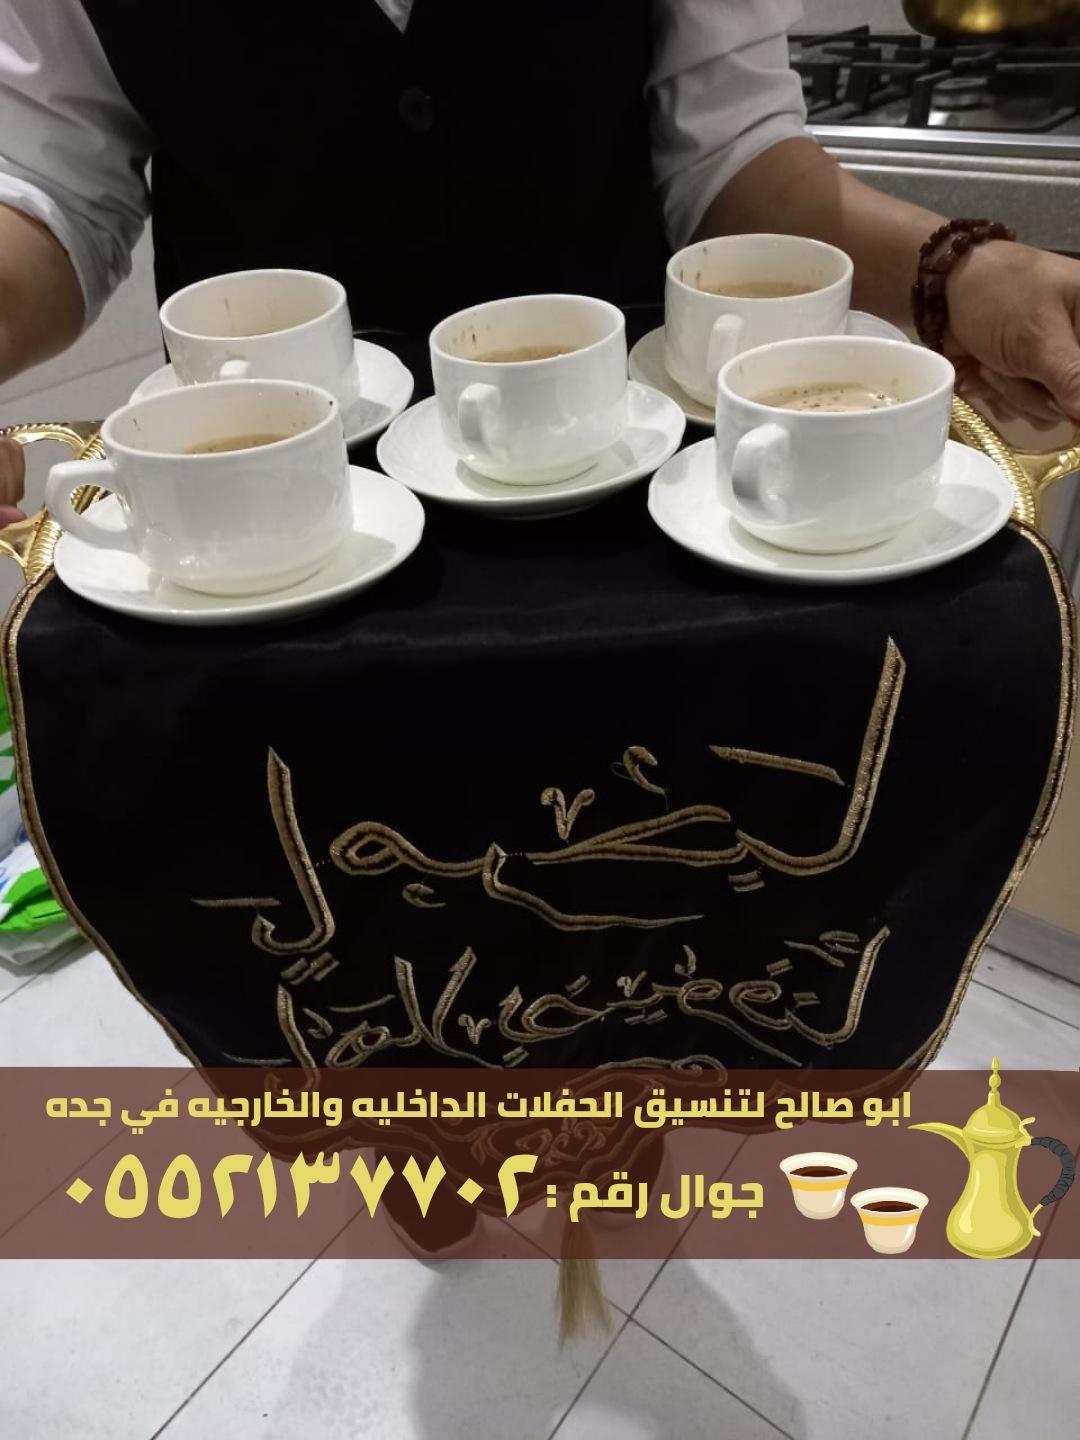 صبابين قهوه قهوجيات في جدة,0552137702 754785714